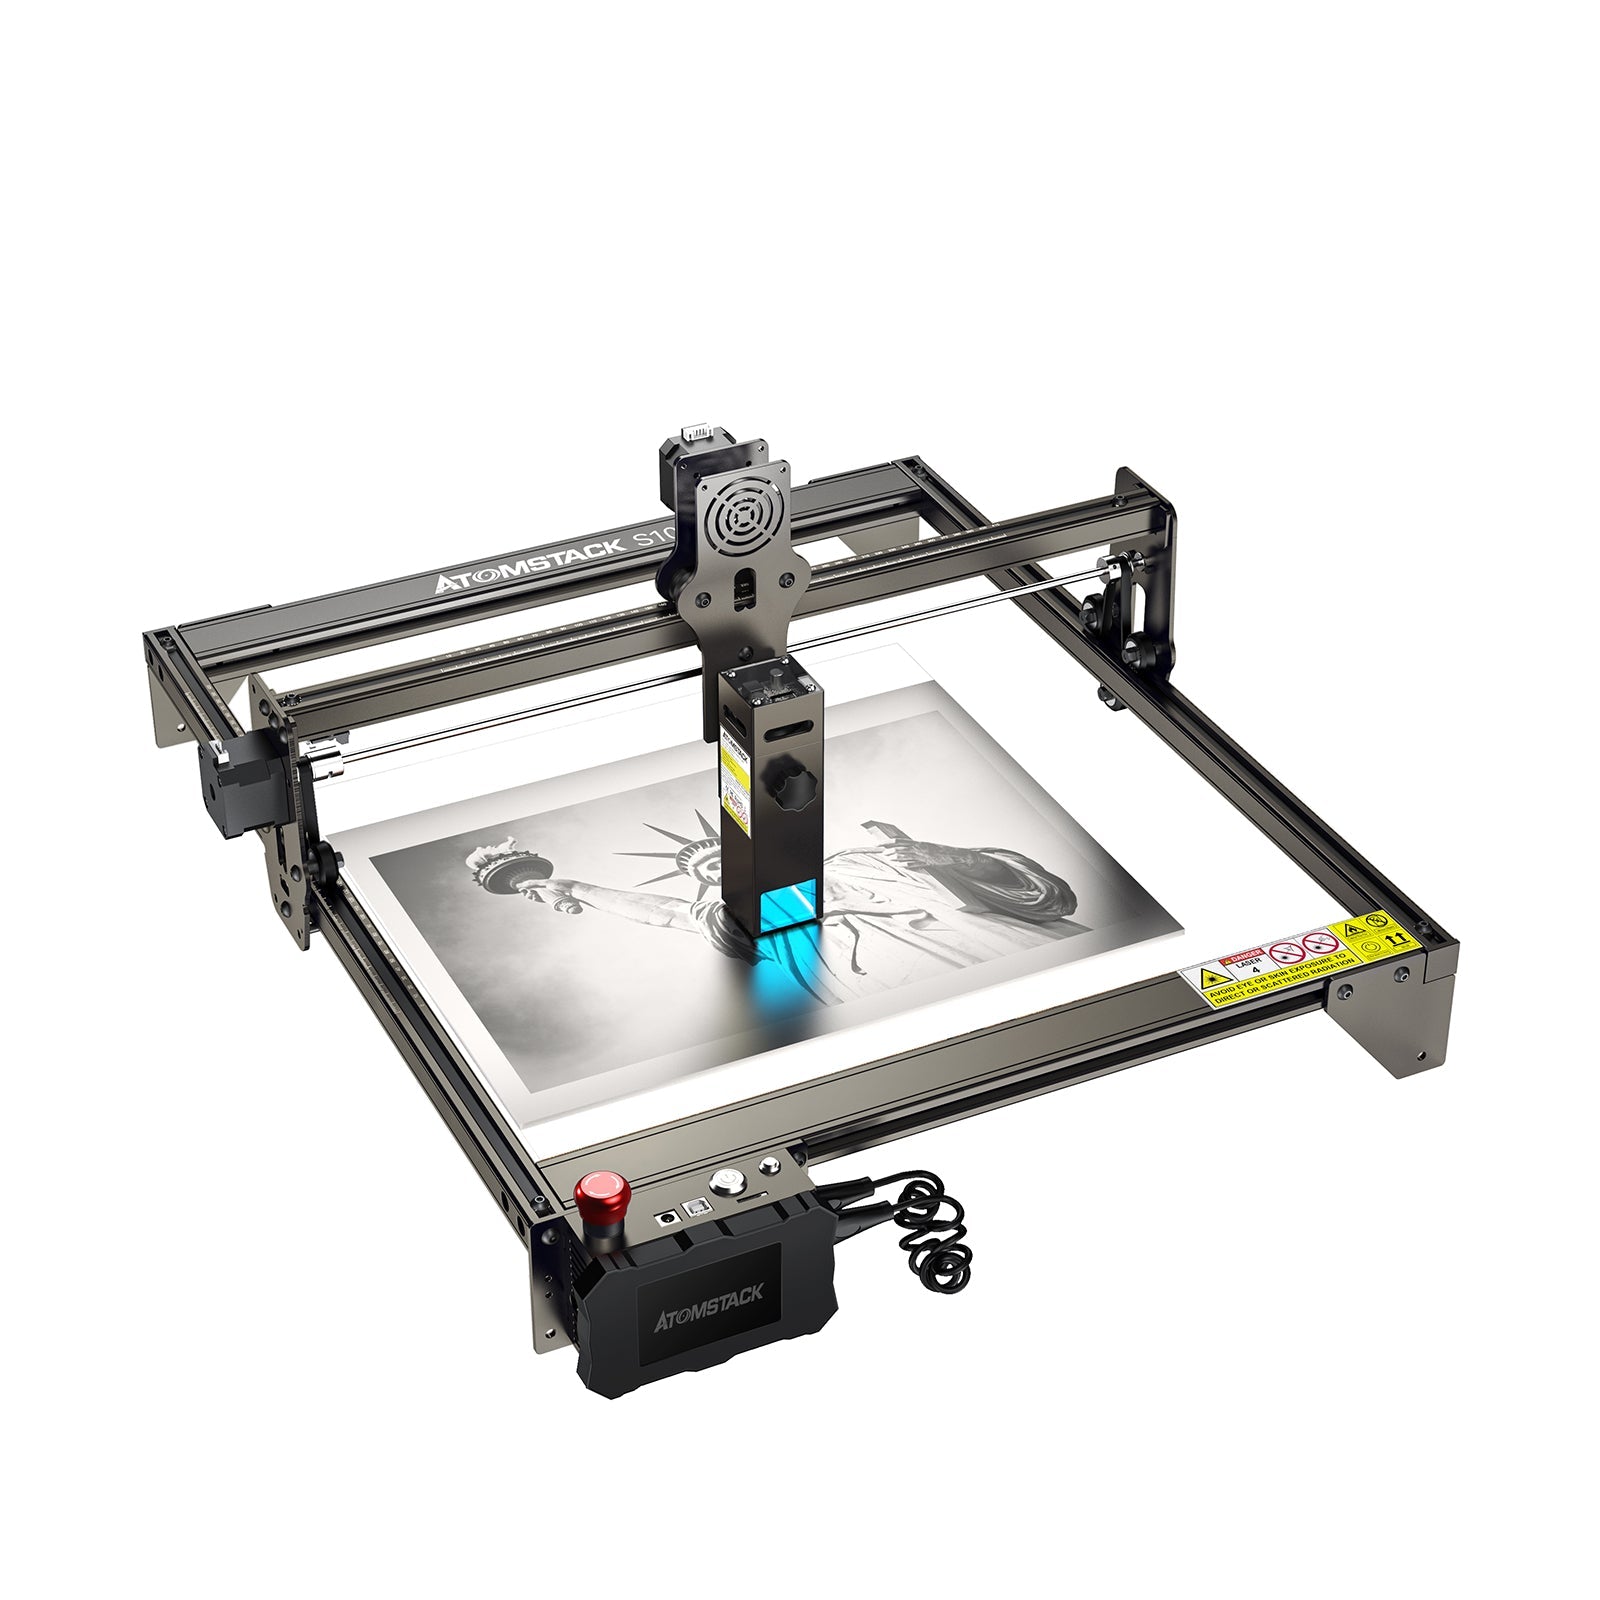 ATOMSTACK S10 PRO Laser Engraver